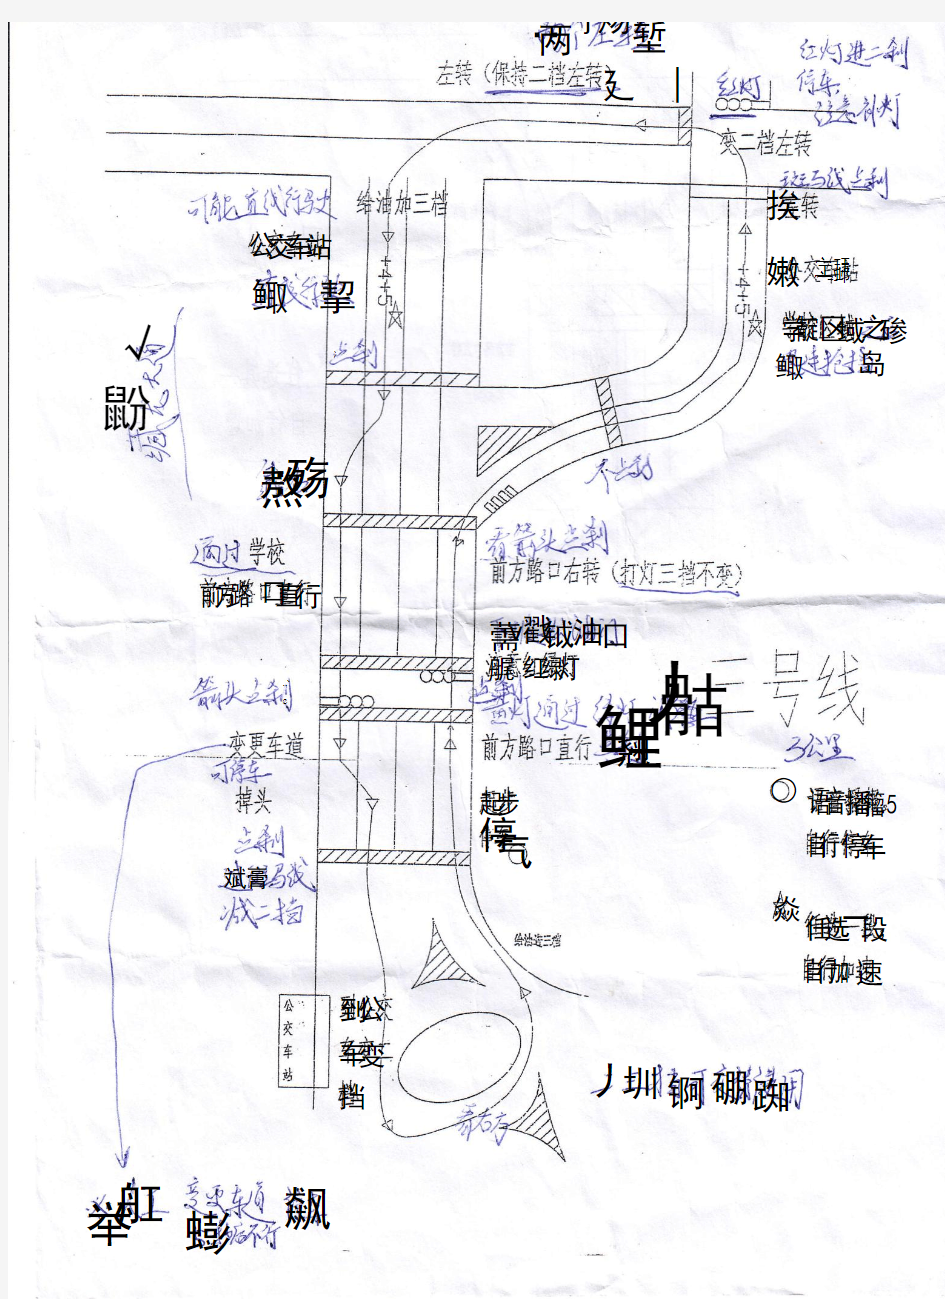 武汉大学生驾校科目三考场三号线路线图